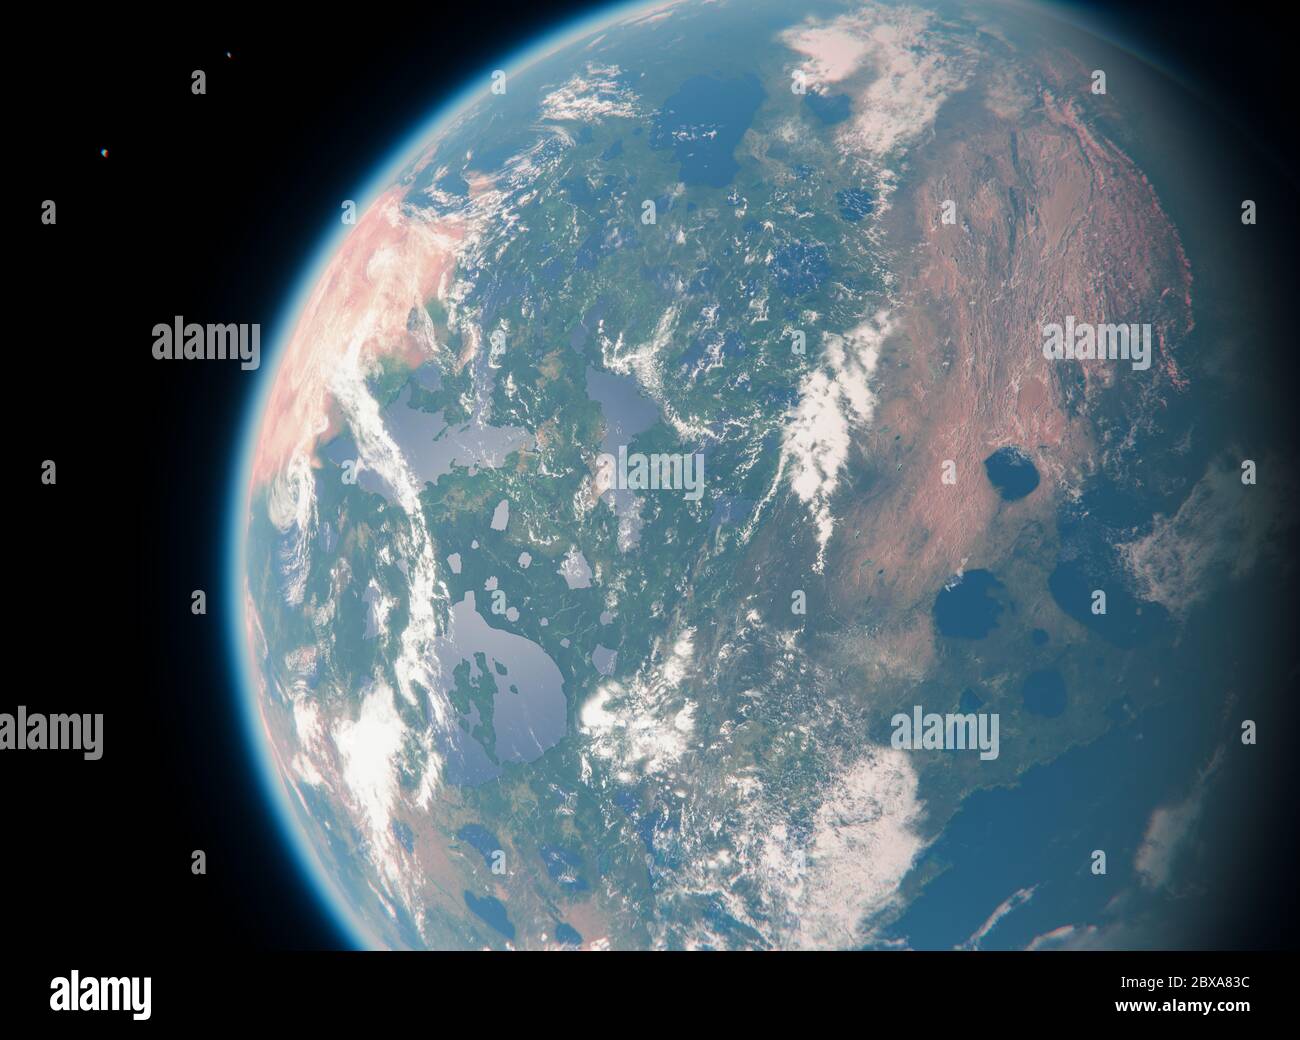 Bewohnbare blaue Erde wie Planet mit zwei Monden und Sonne im Weltraum - bewohnbarer Exoplanet mit zwei Monden - Alien Life in Universe Stockfoto